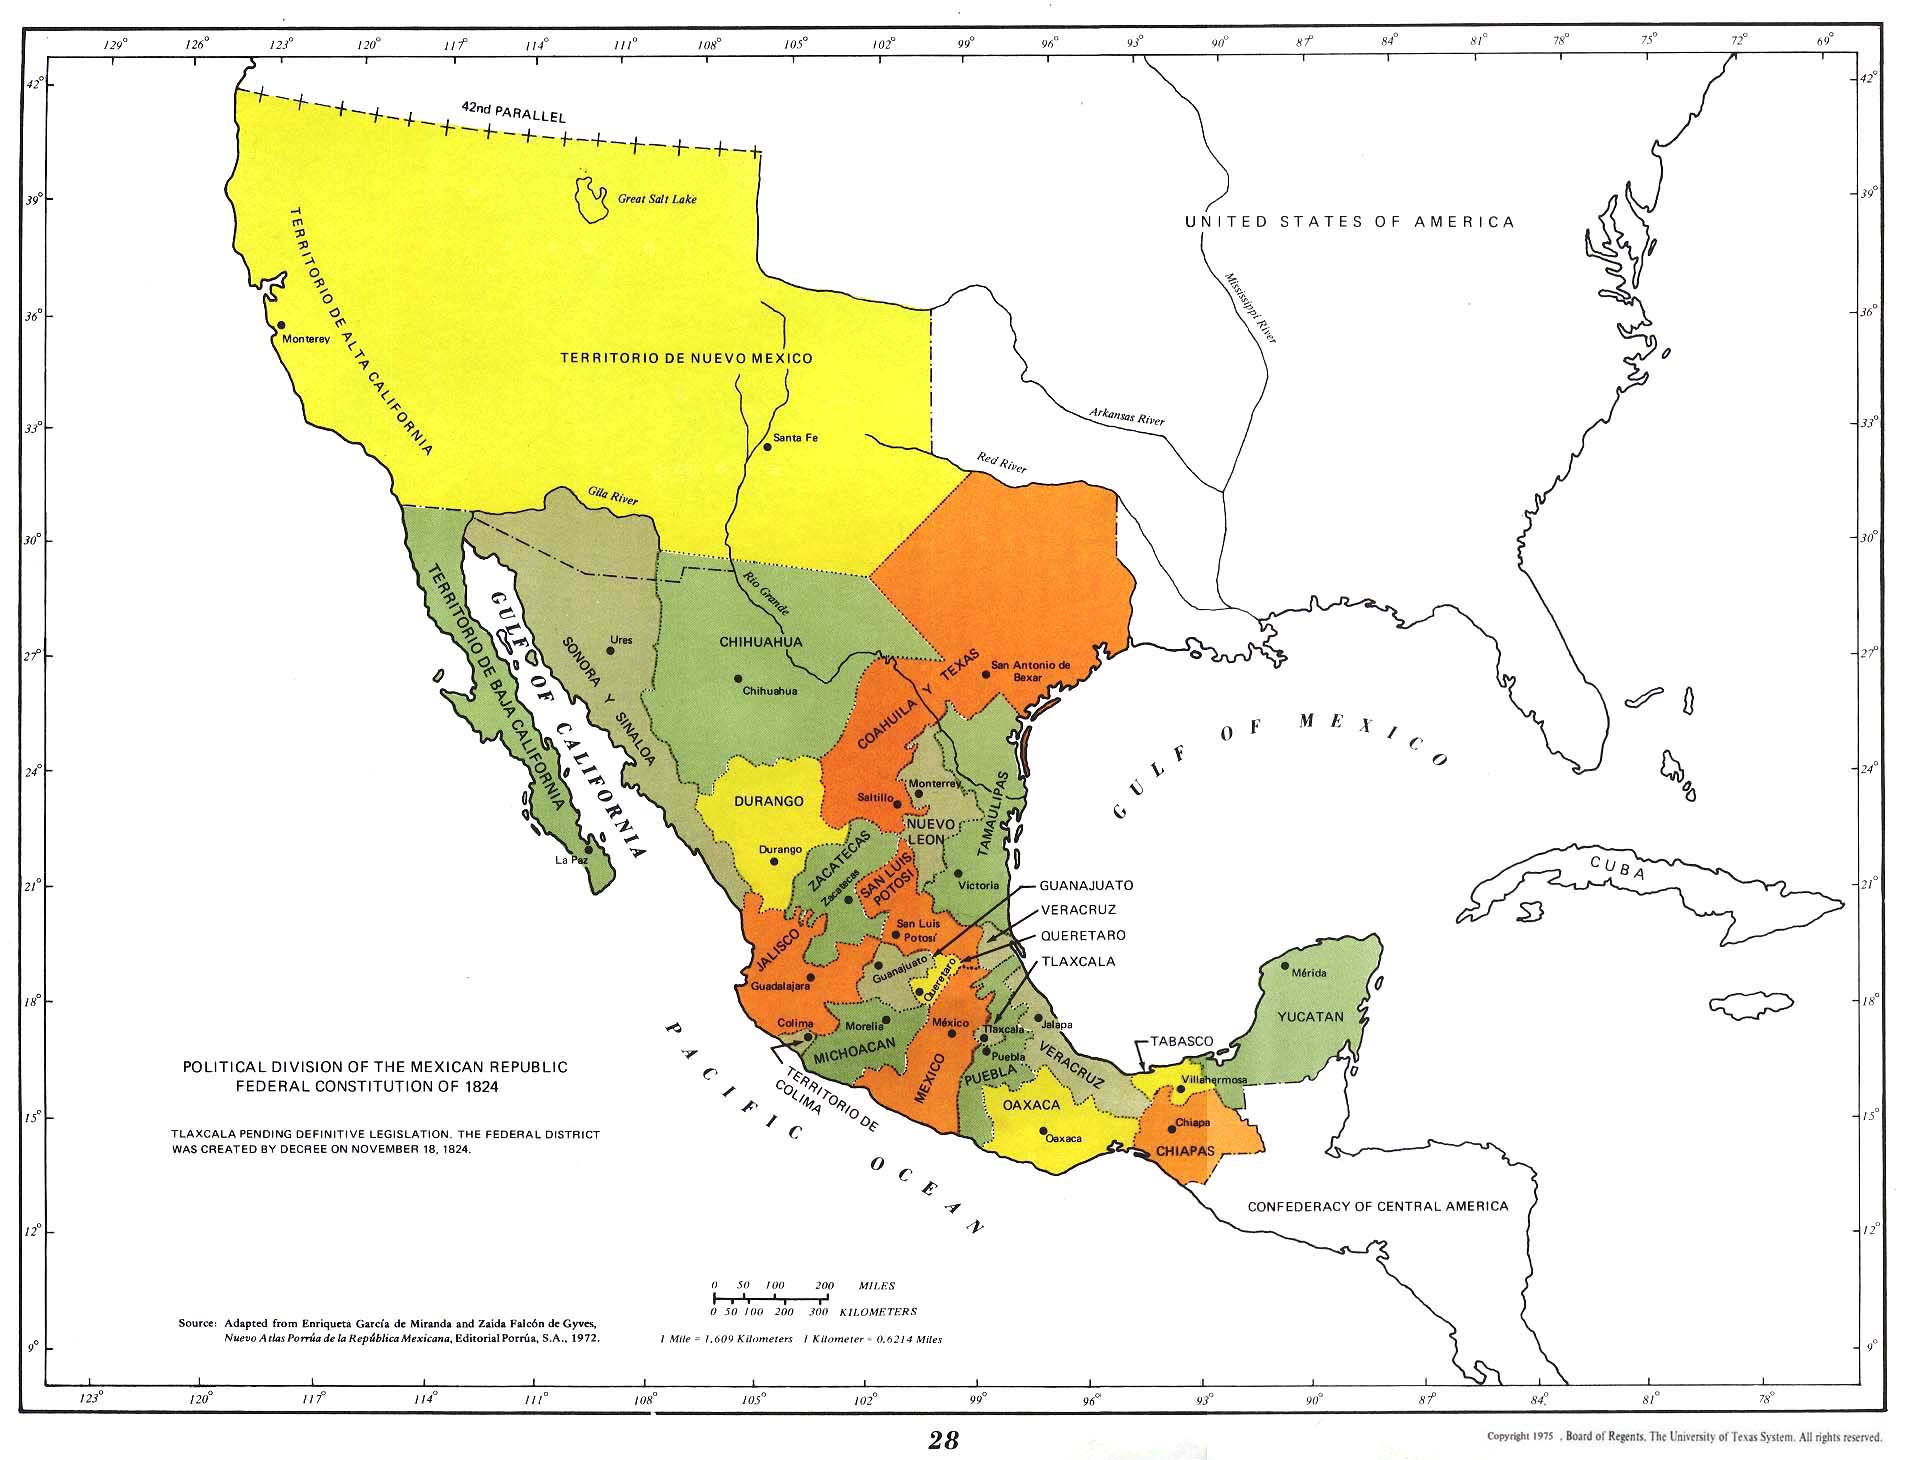 Mapa de las Divisiones Política de la República Mexicana Segun Constitución Federal de 1824, México